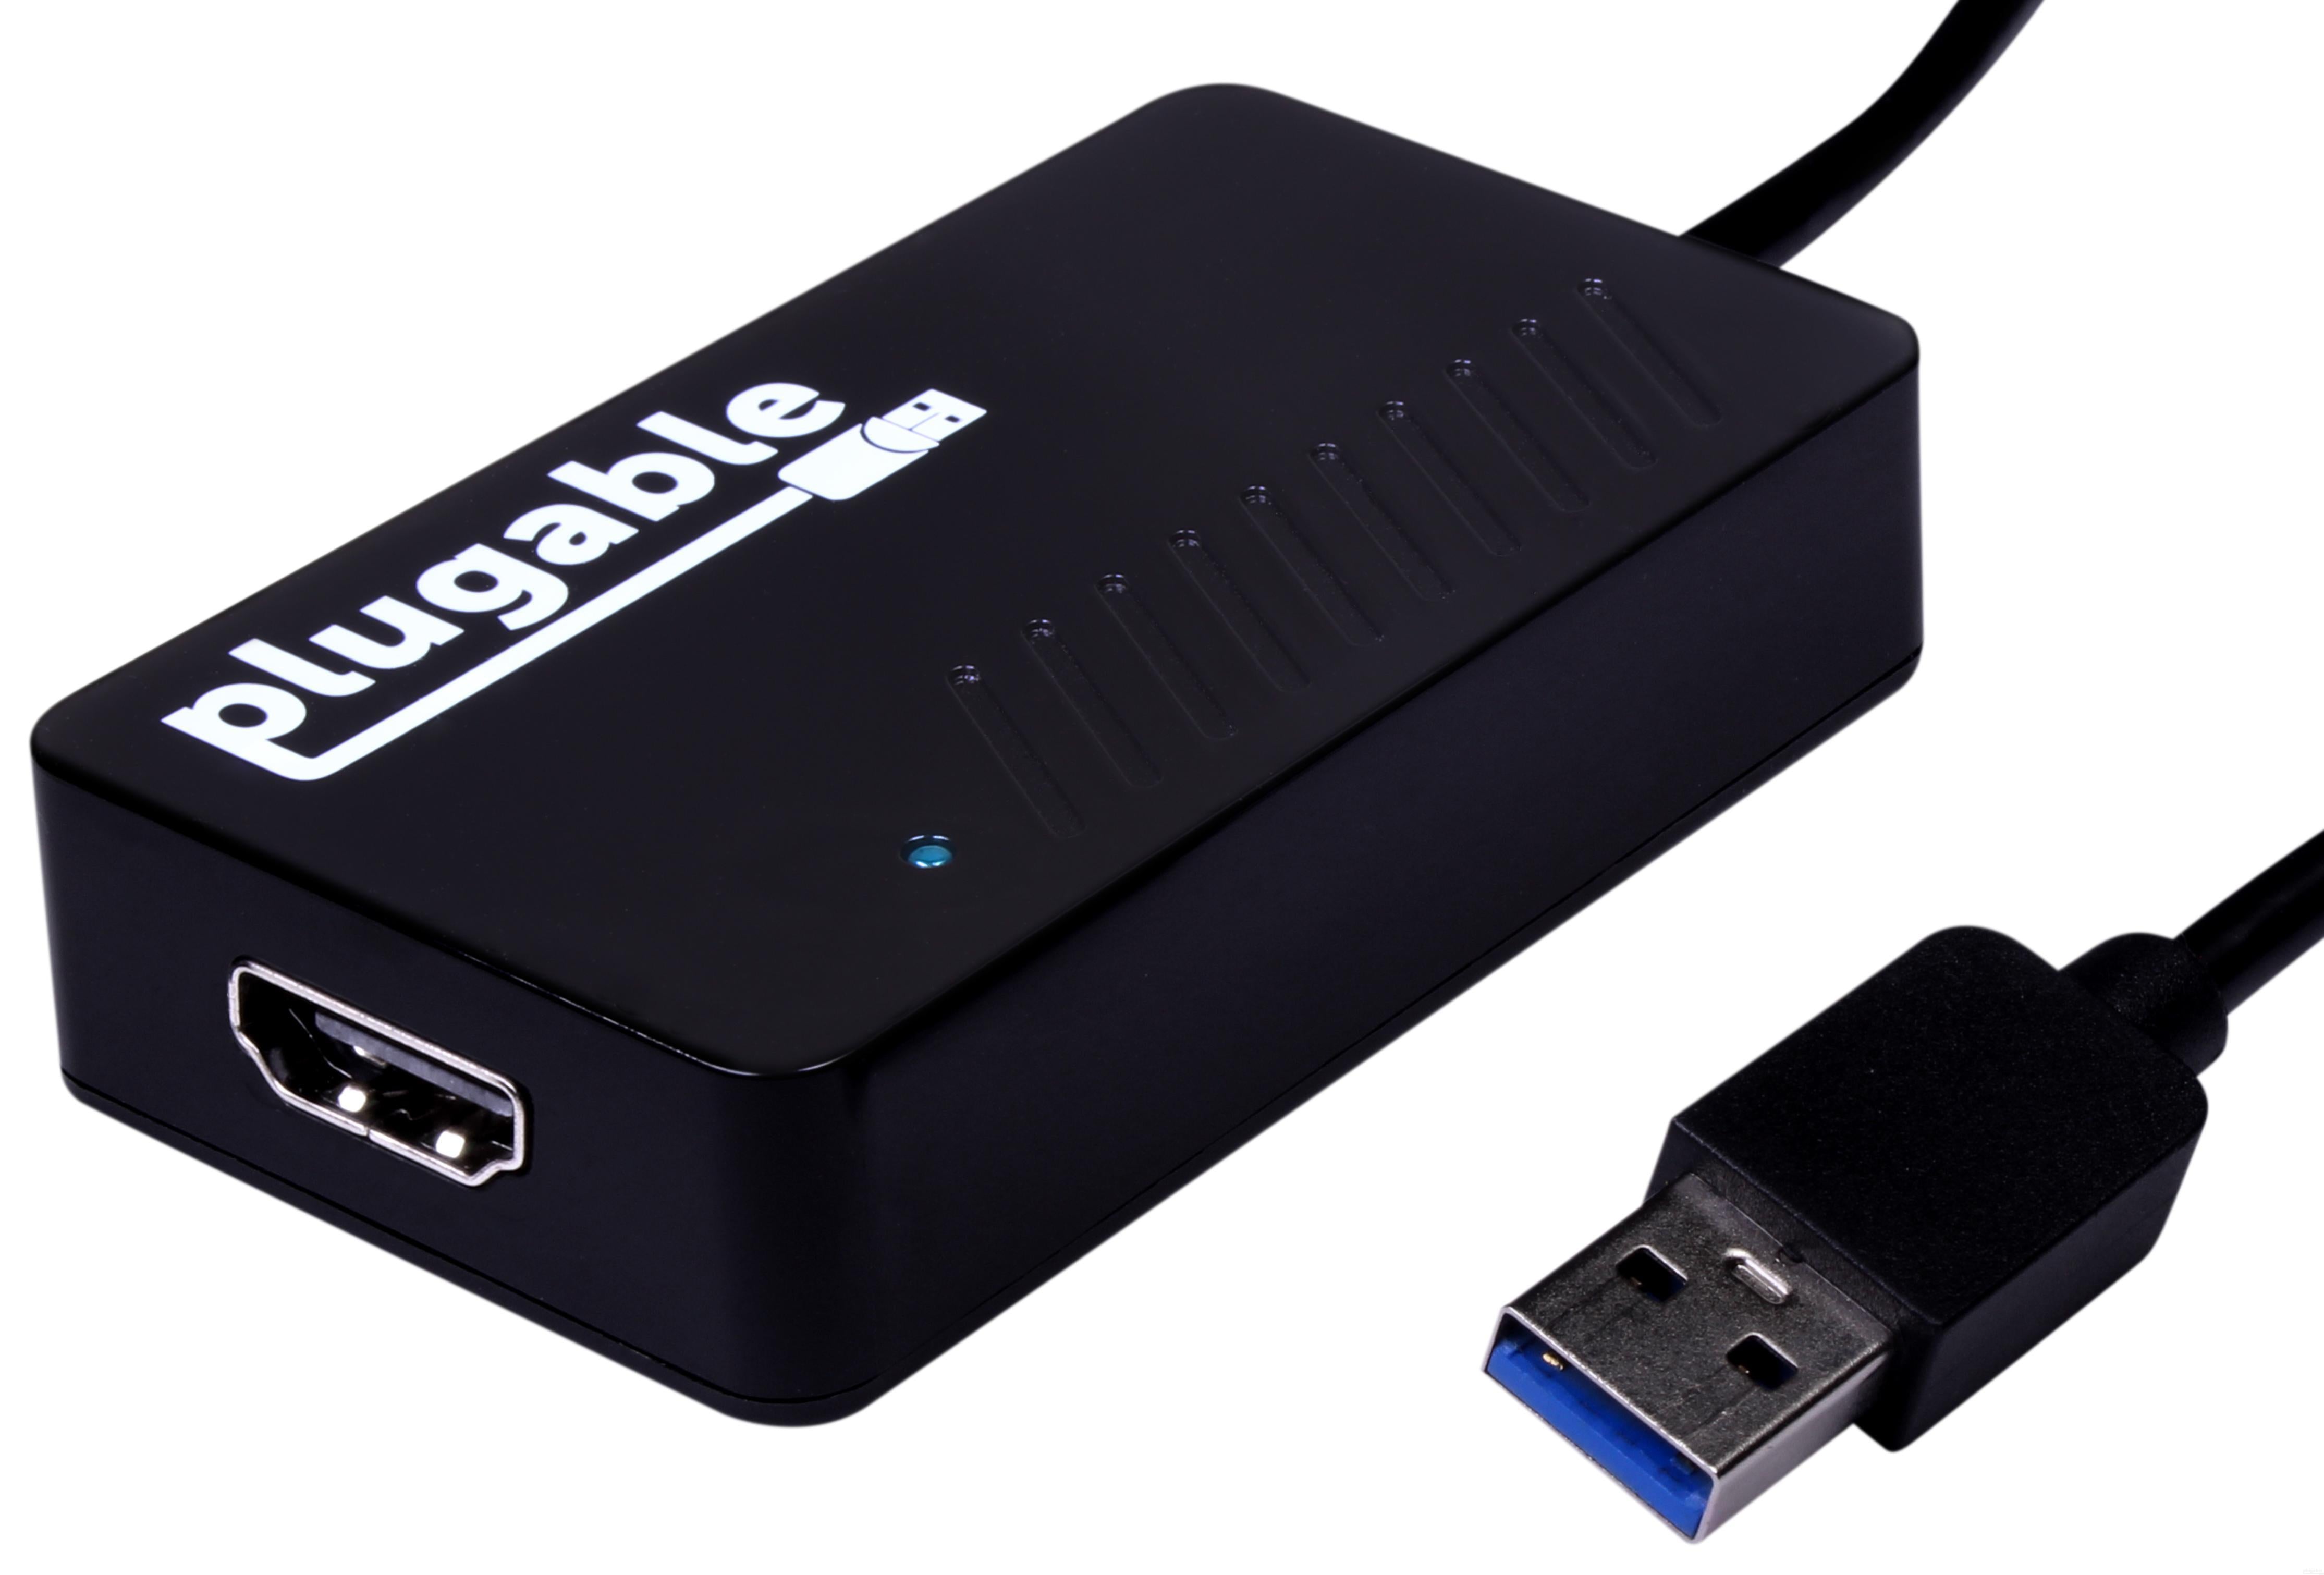 Bløde fødder økse værktøj Plugable USB 3.0 to 2K HDMI Video Graphics Adapter with Audio for Mult –  Plugable Technologies